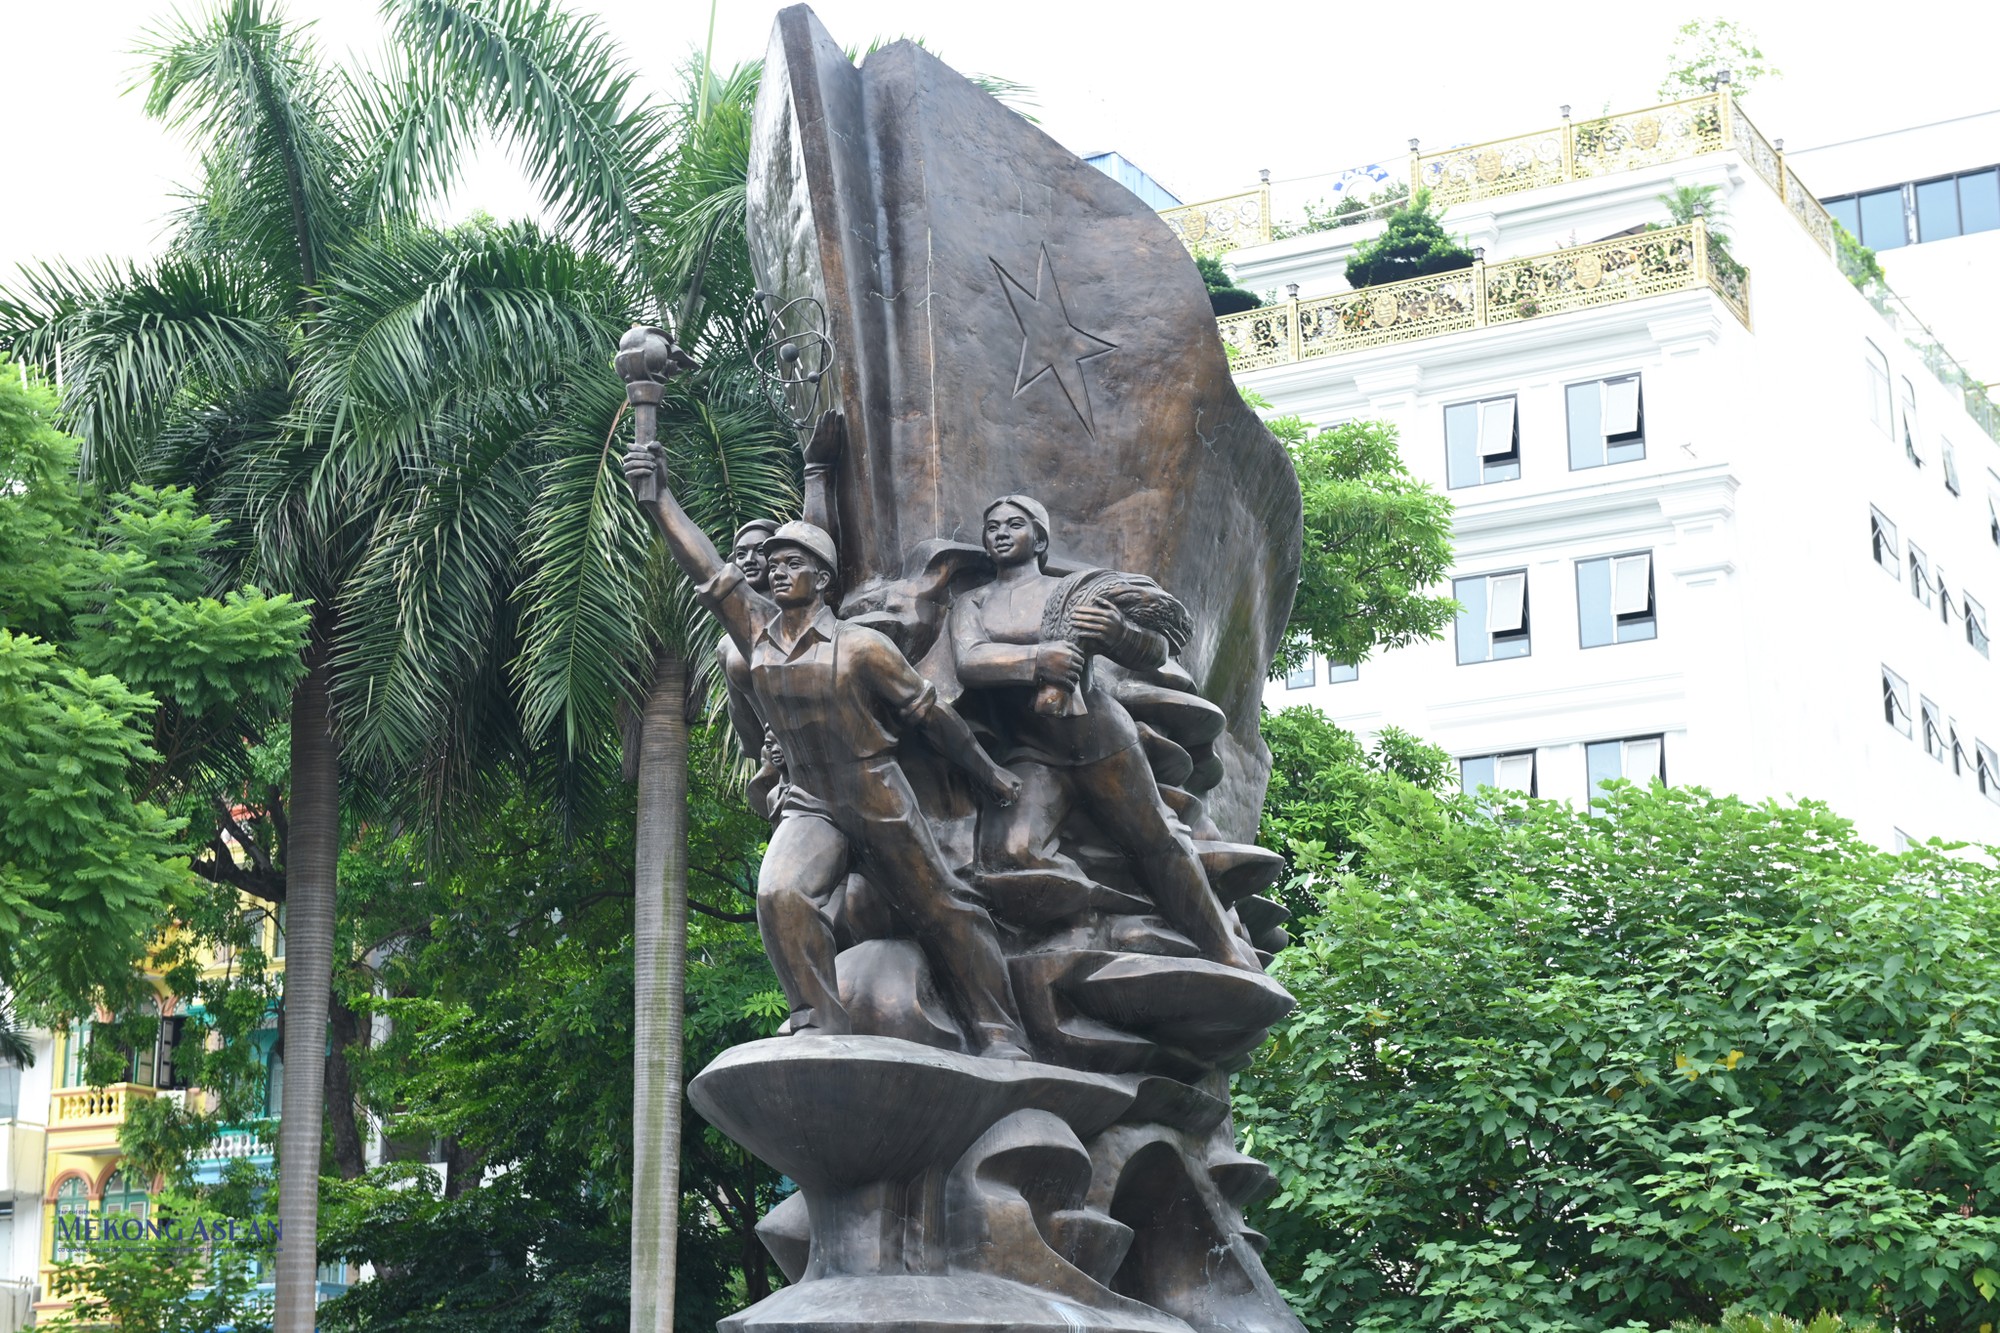  Ngắm các công trình tượng đài công cộng tại Hà Nội ảnh 13